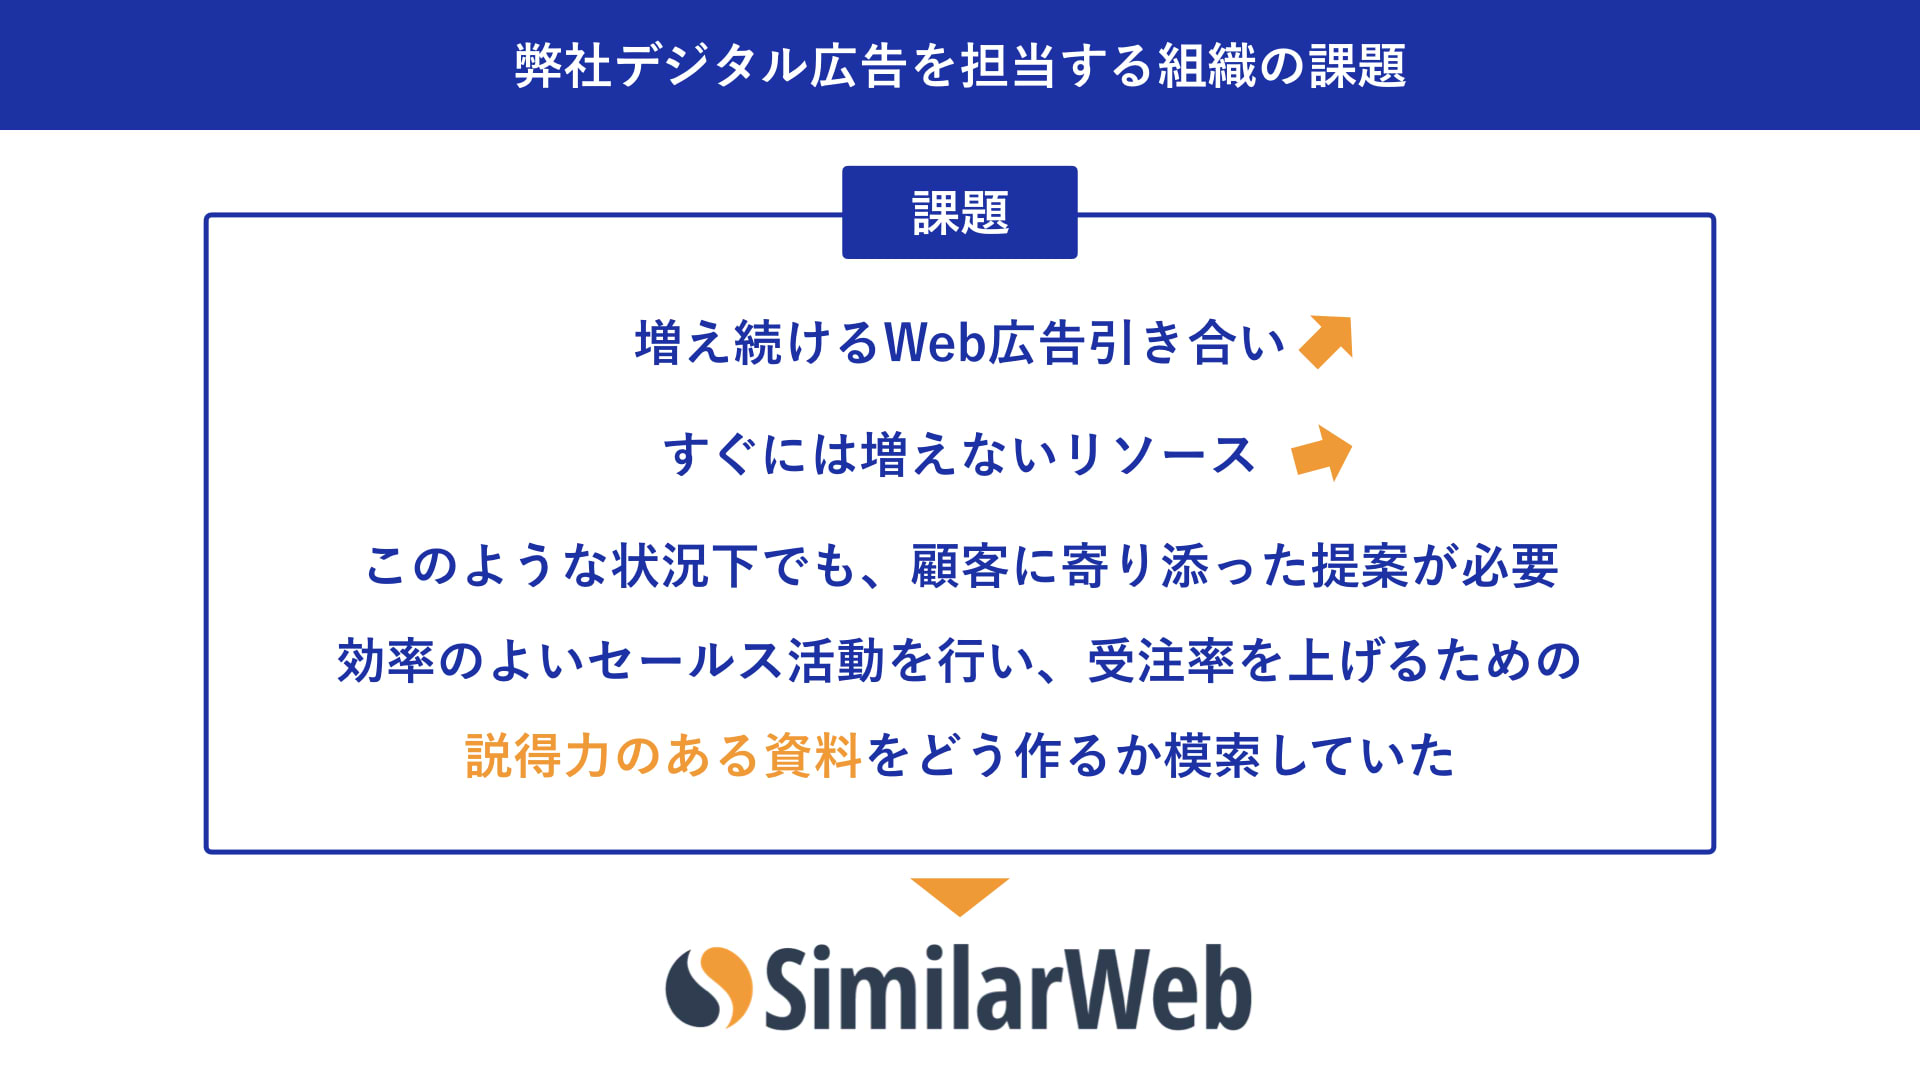 大日本印刷株式会社：加藤 綱貴 弊社デジタル広告を担当する組織の課題